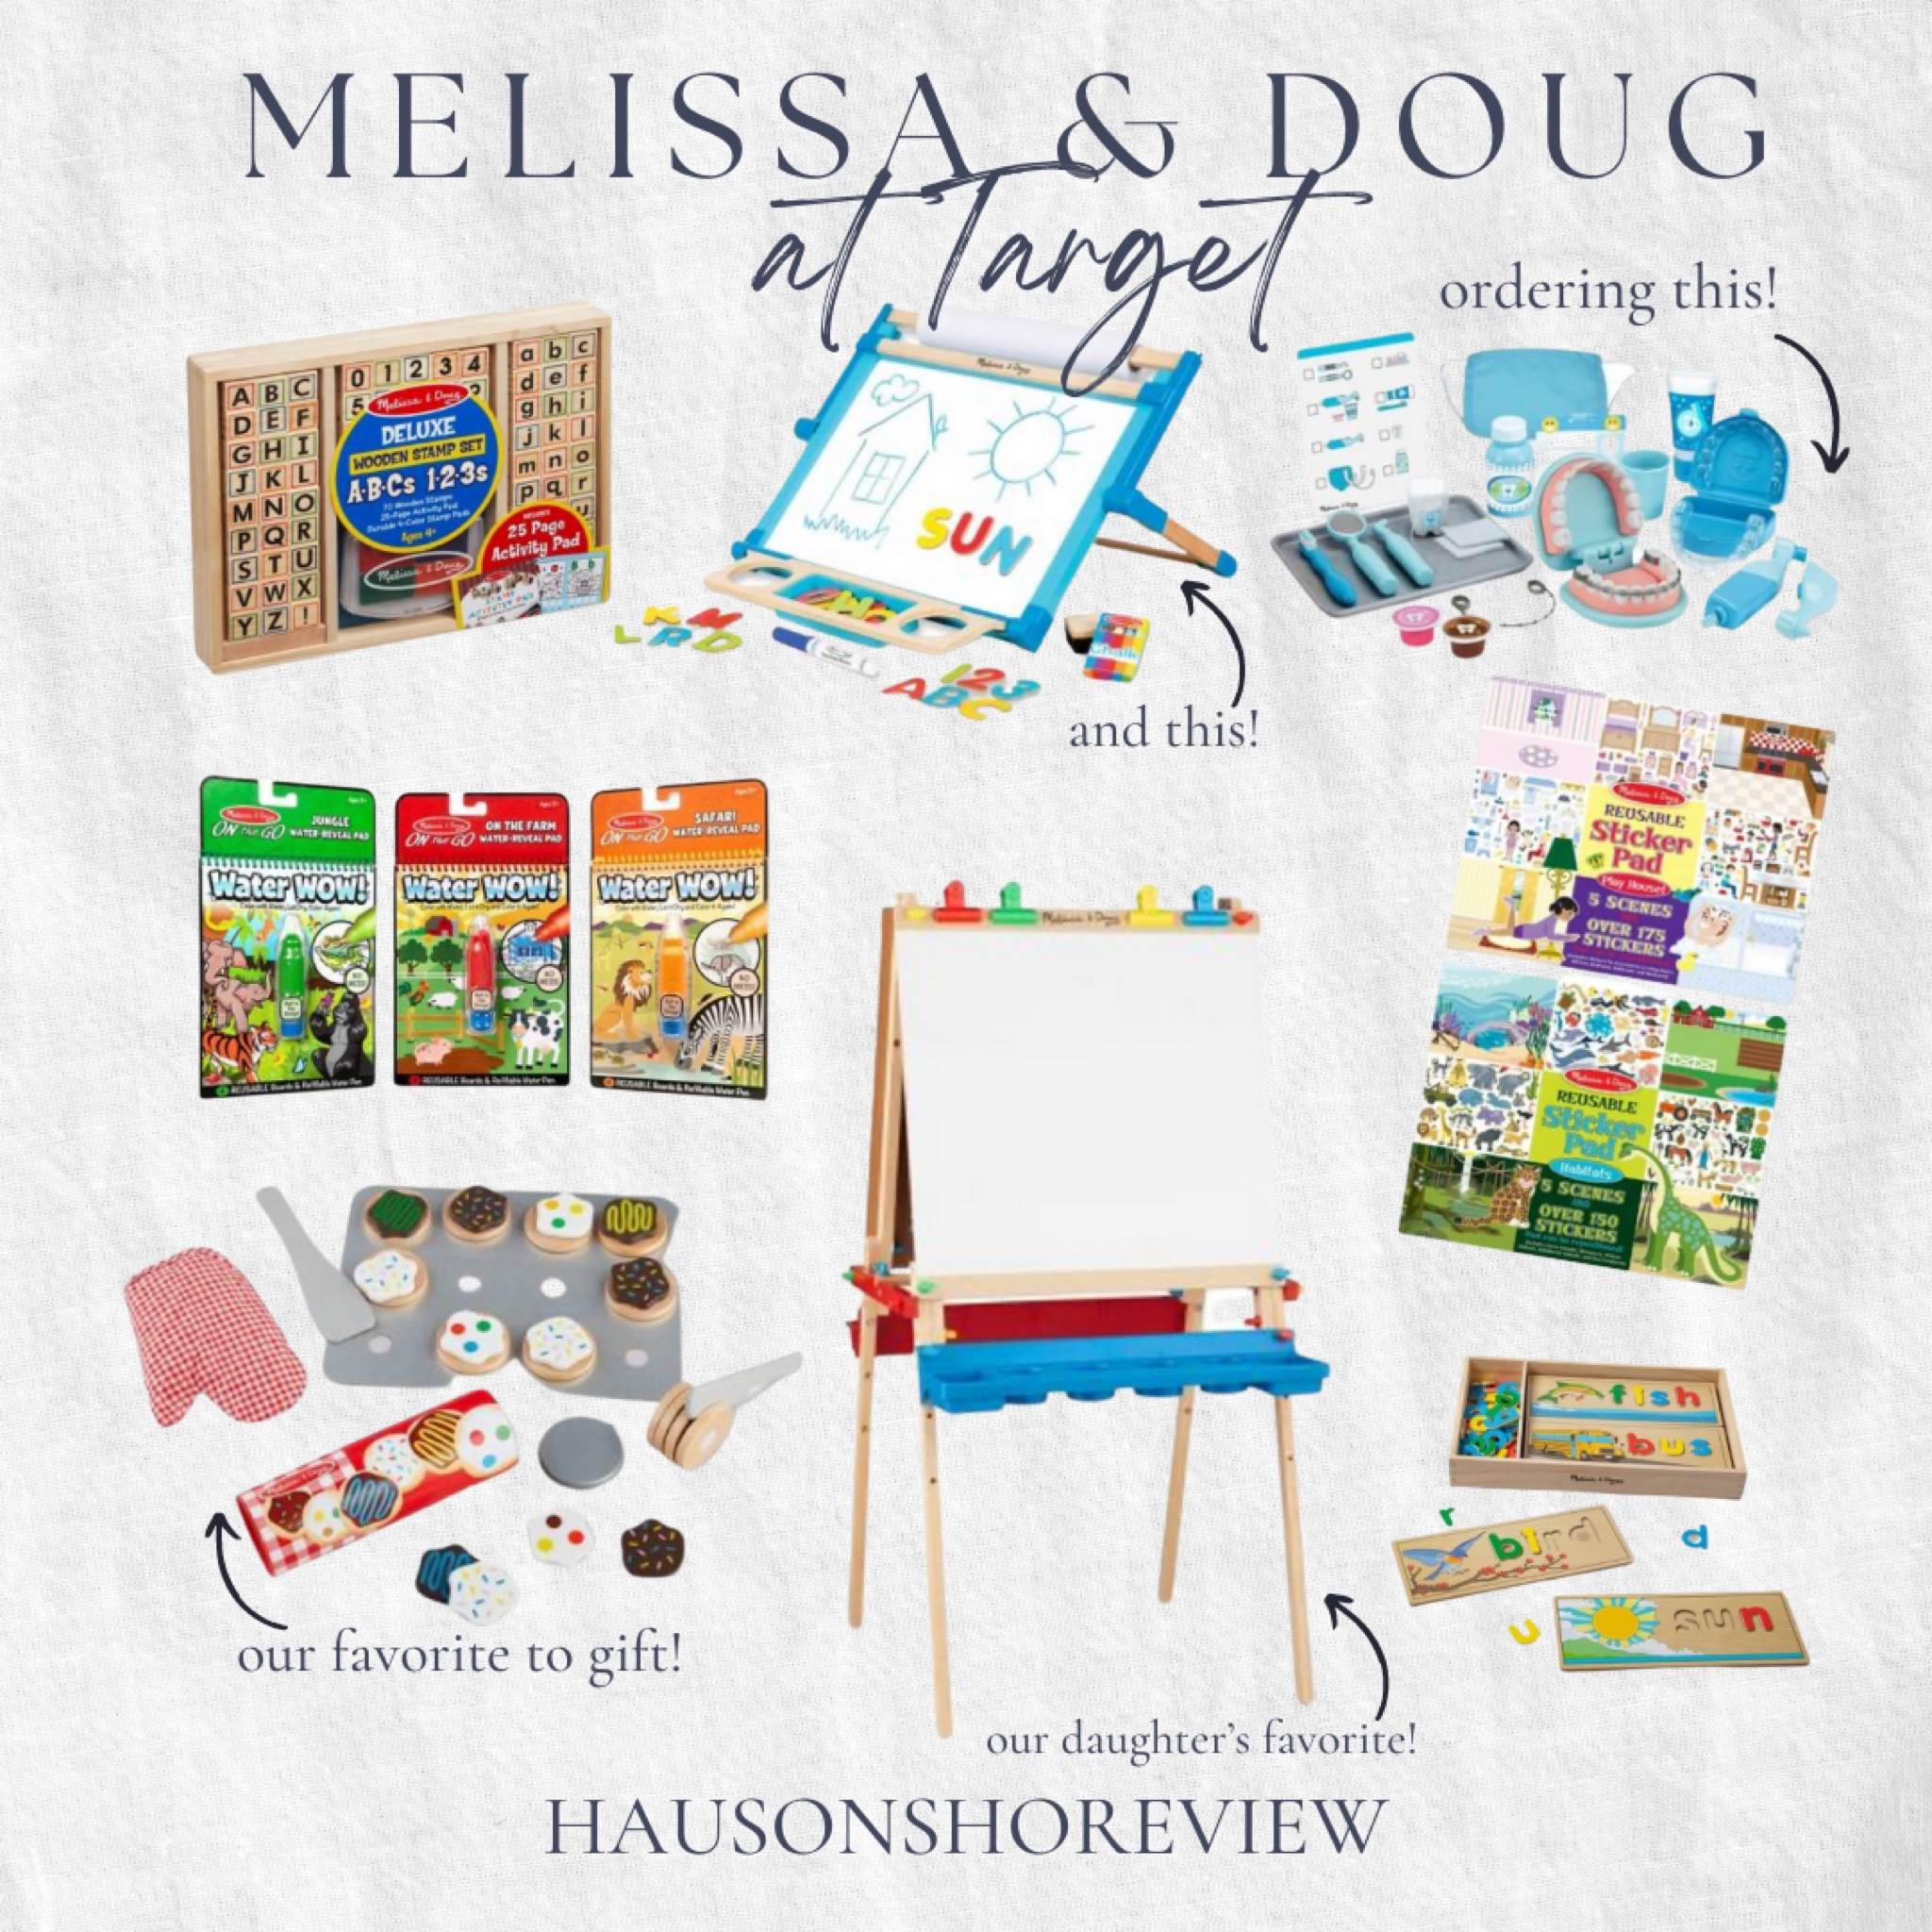 Melissa & Doug - Easel Accessory Set